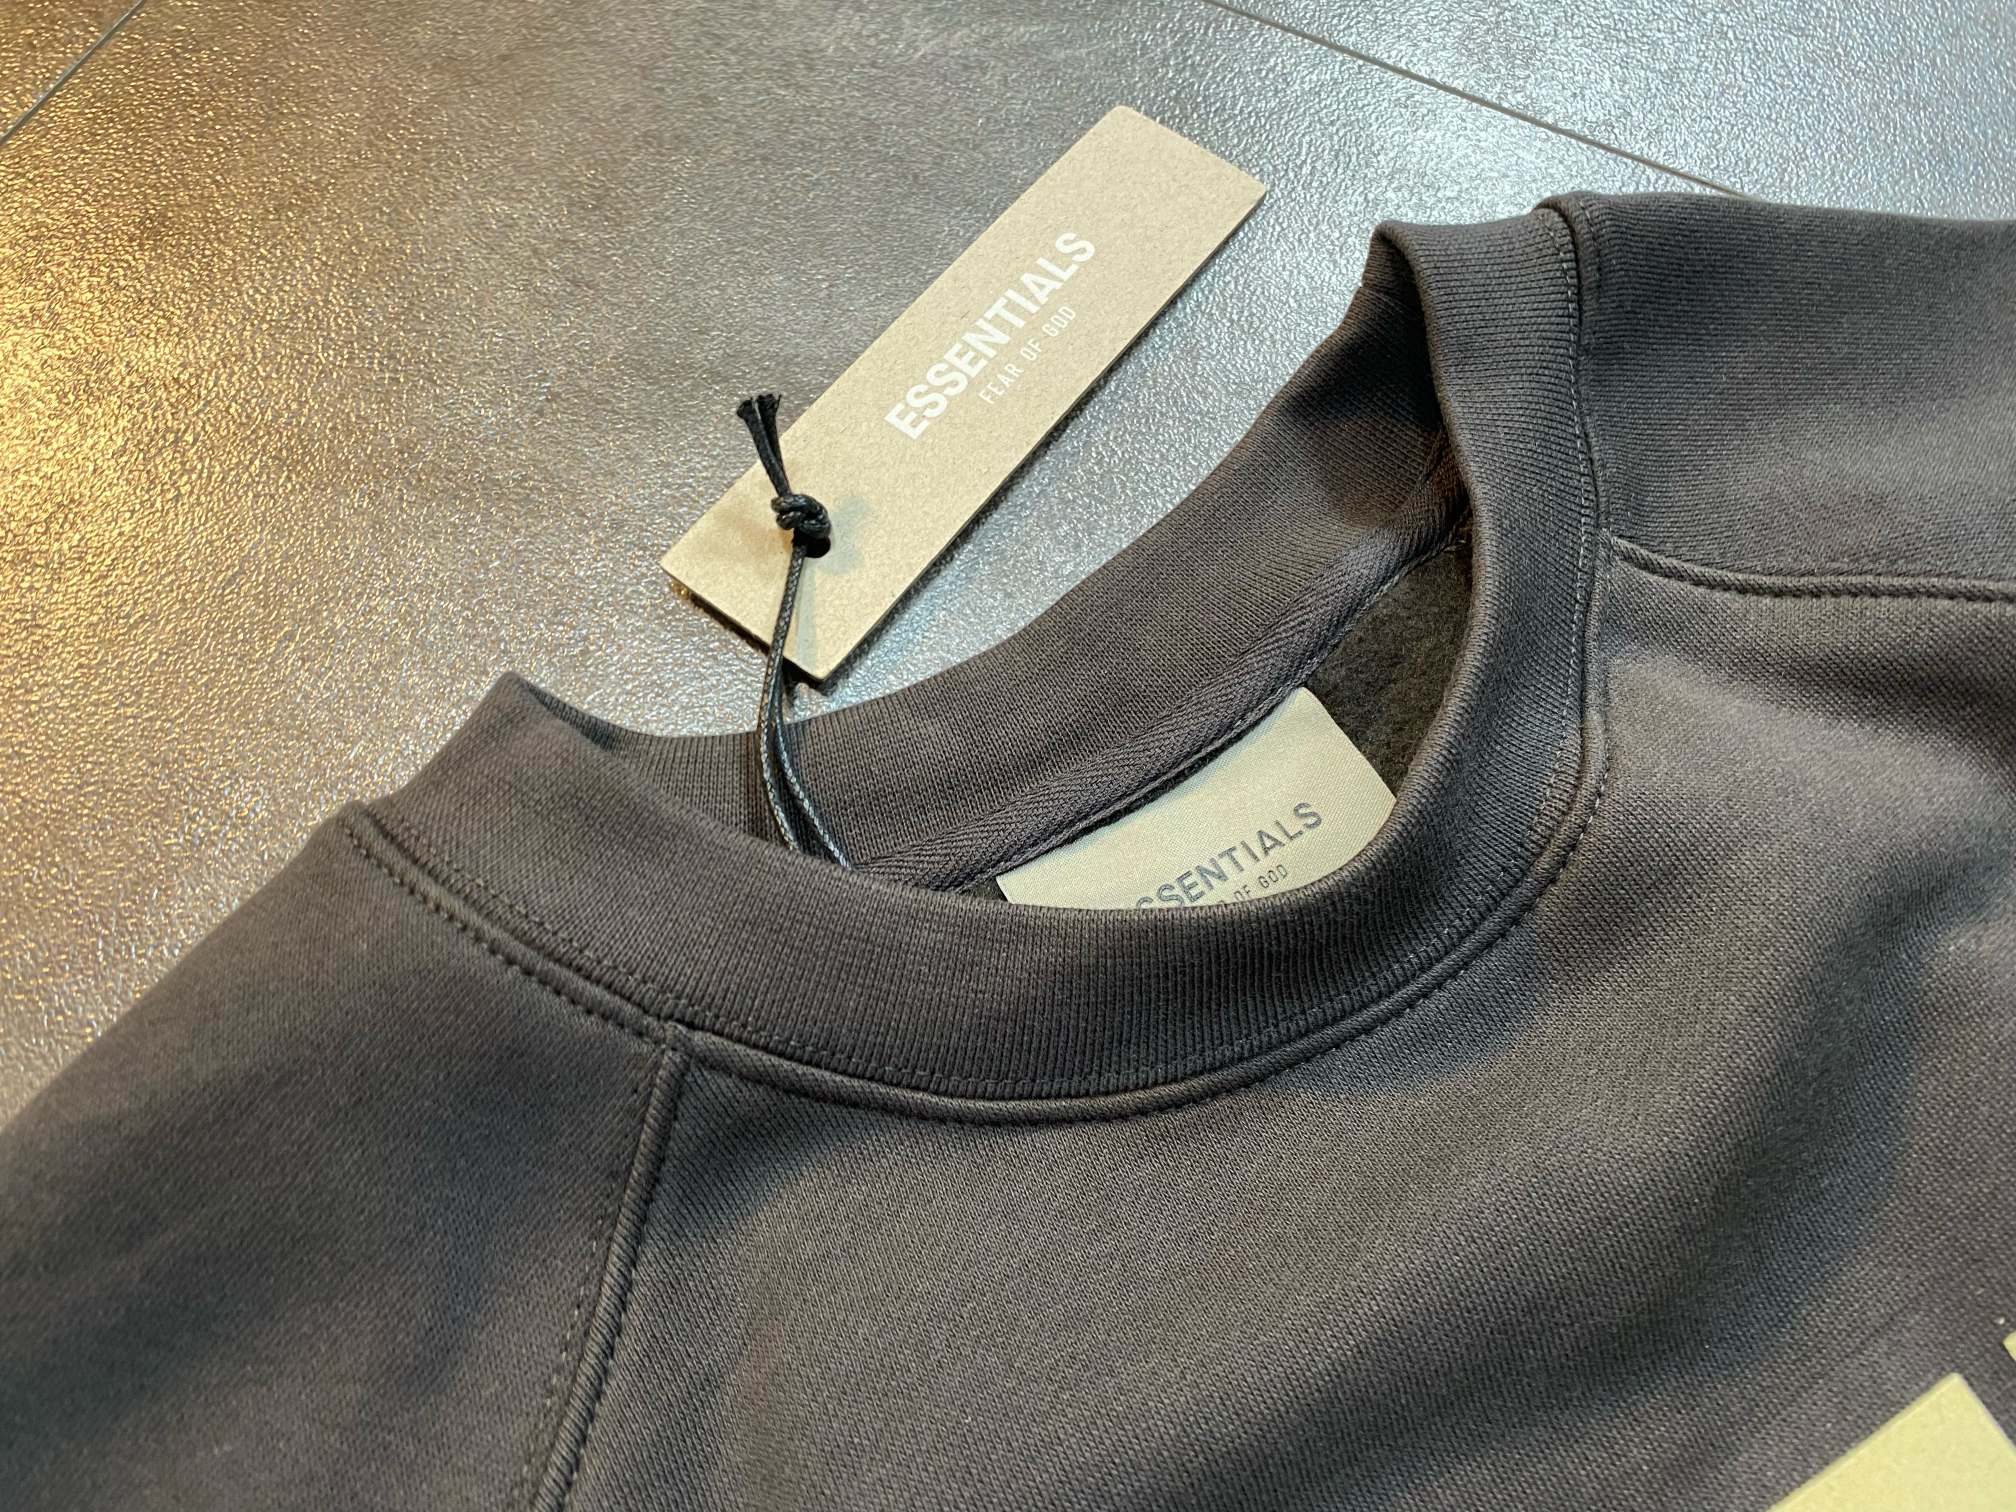 素敵なフィアオブゴッド カリフォルニア激安通販 シンプル 純綿パーカー 新作 人気 ファッション 2色可選_2